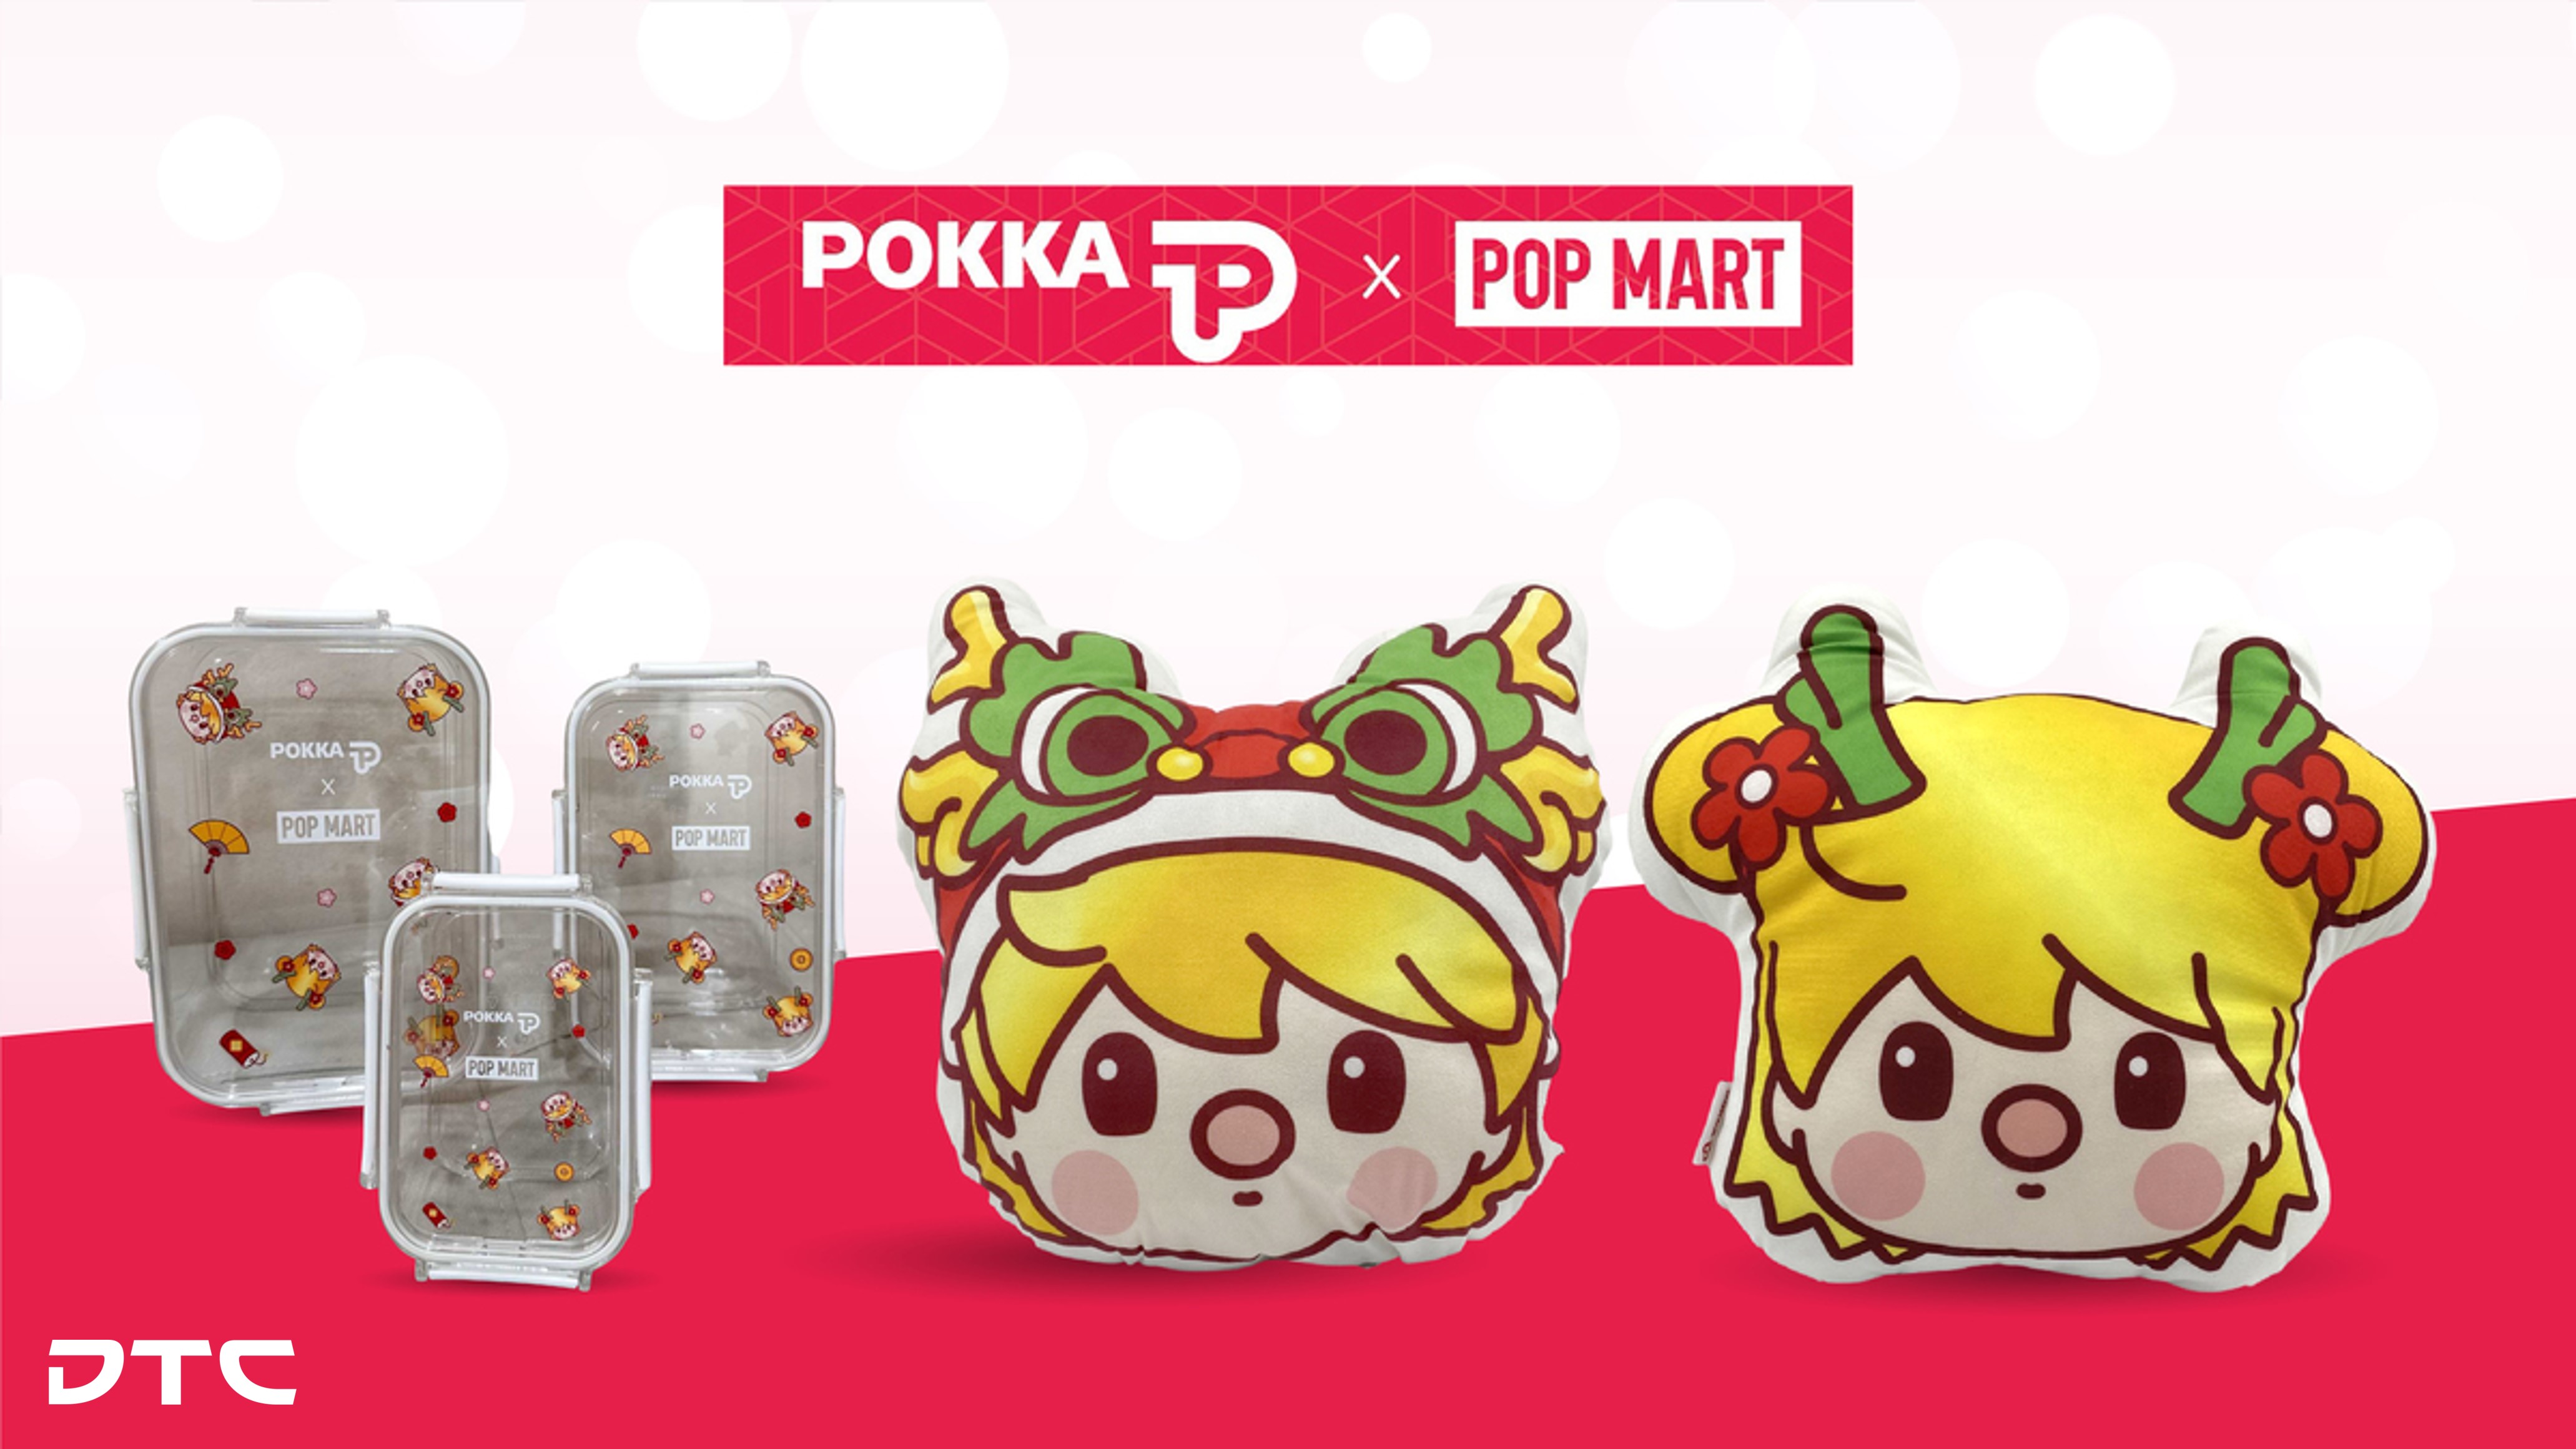 POKKA x POP MART Sweet Bean Festive Collaboration